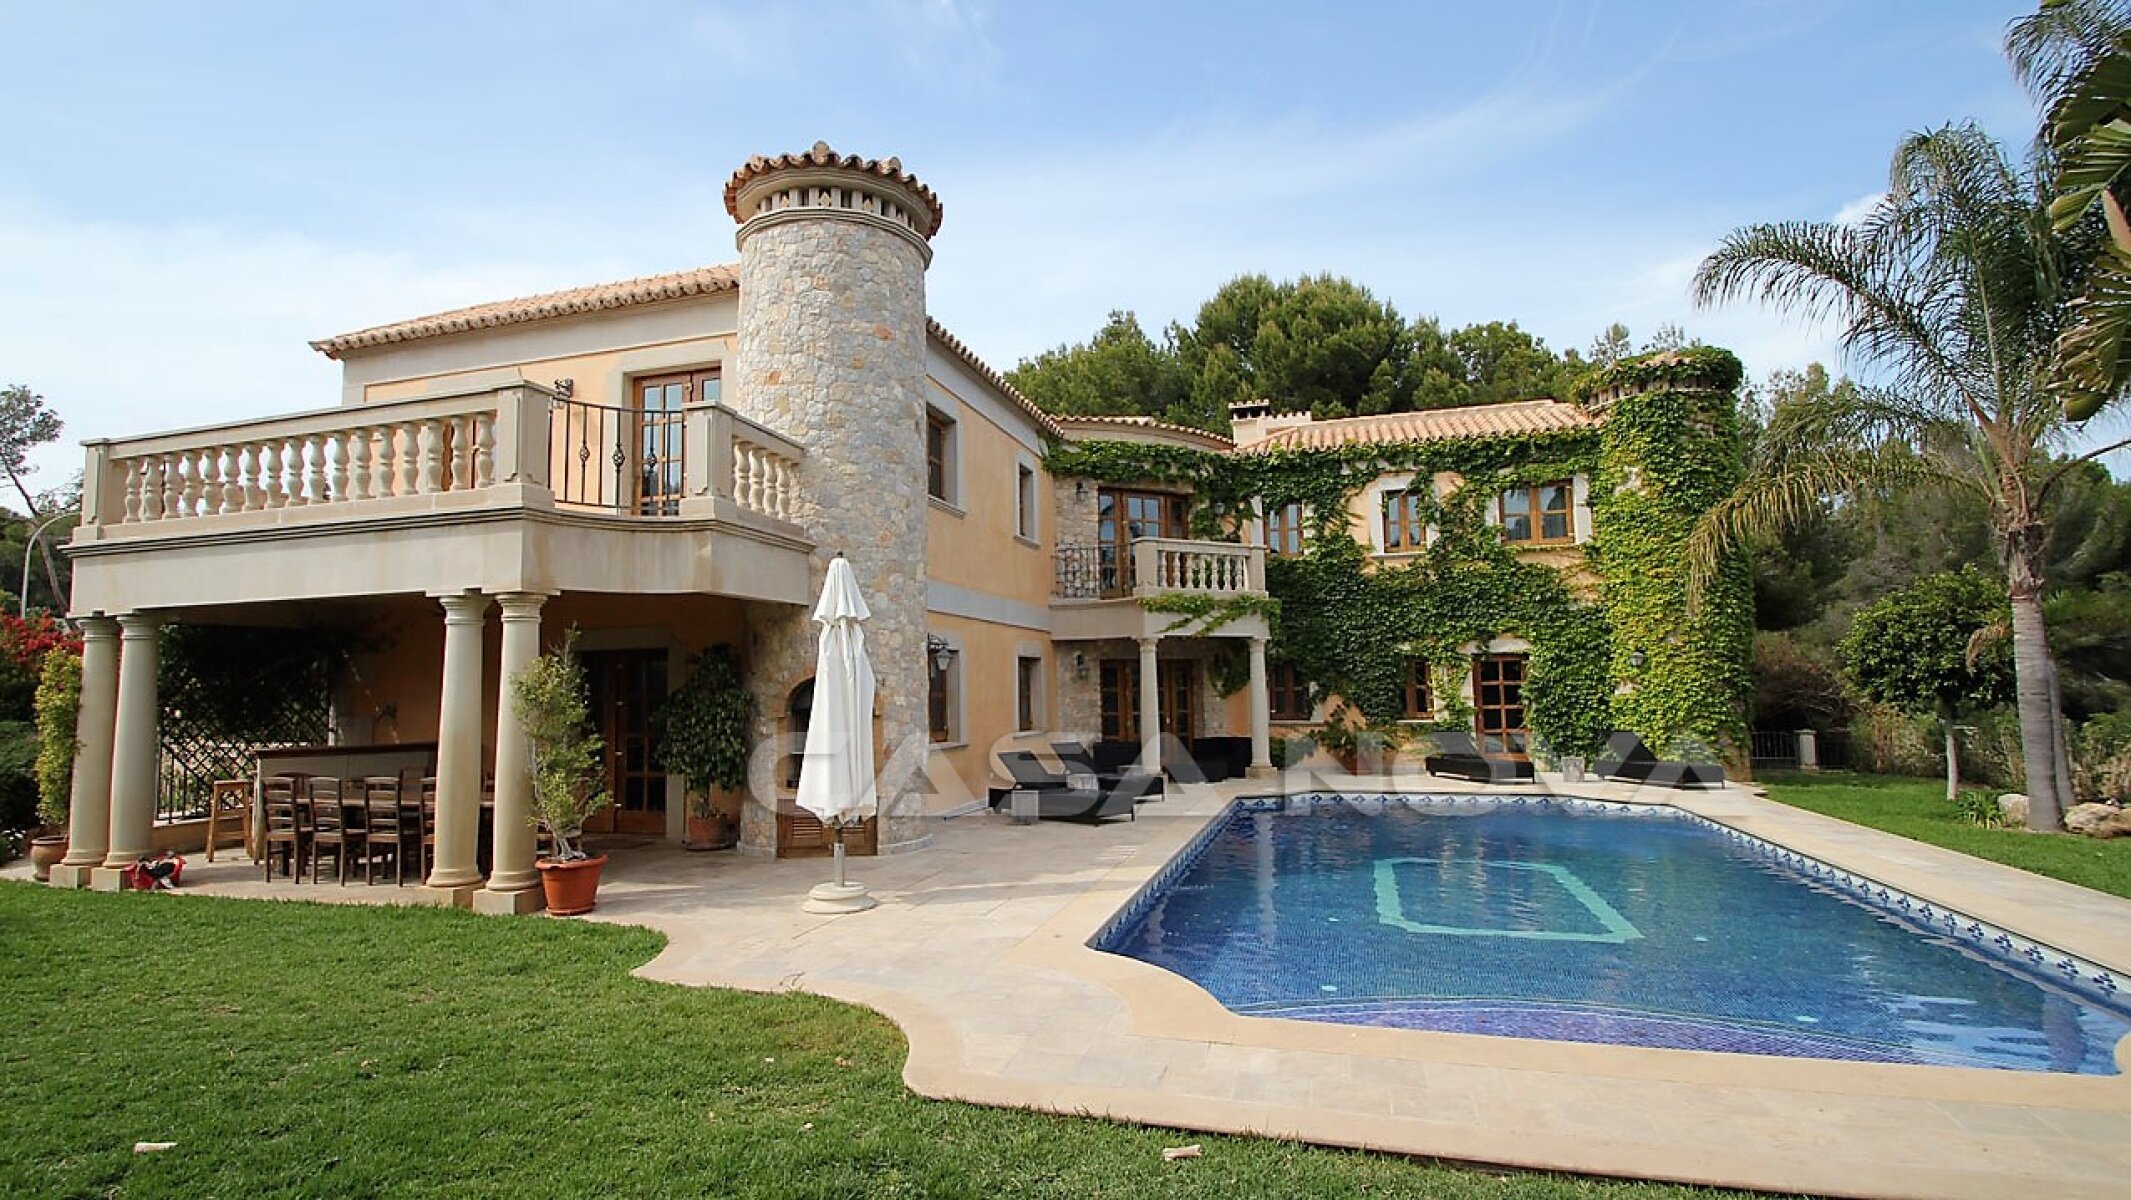 Immobilien Mallorca: Mediterrane Villa mit Naturstein-Elementen